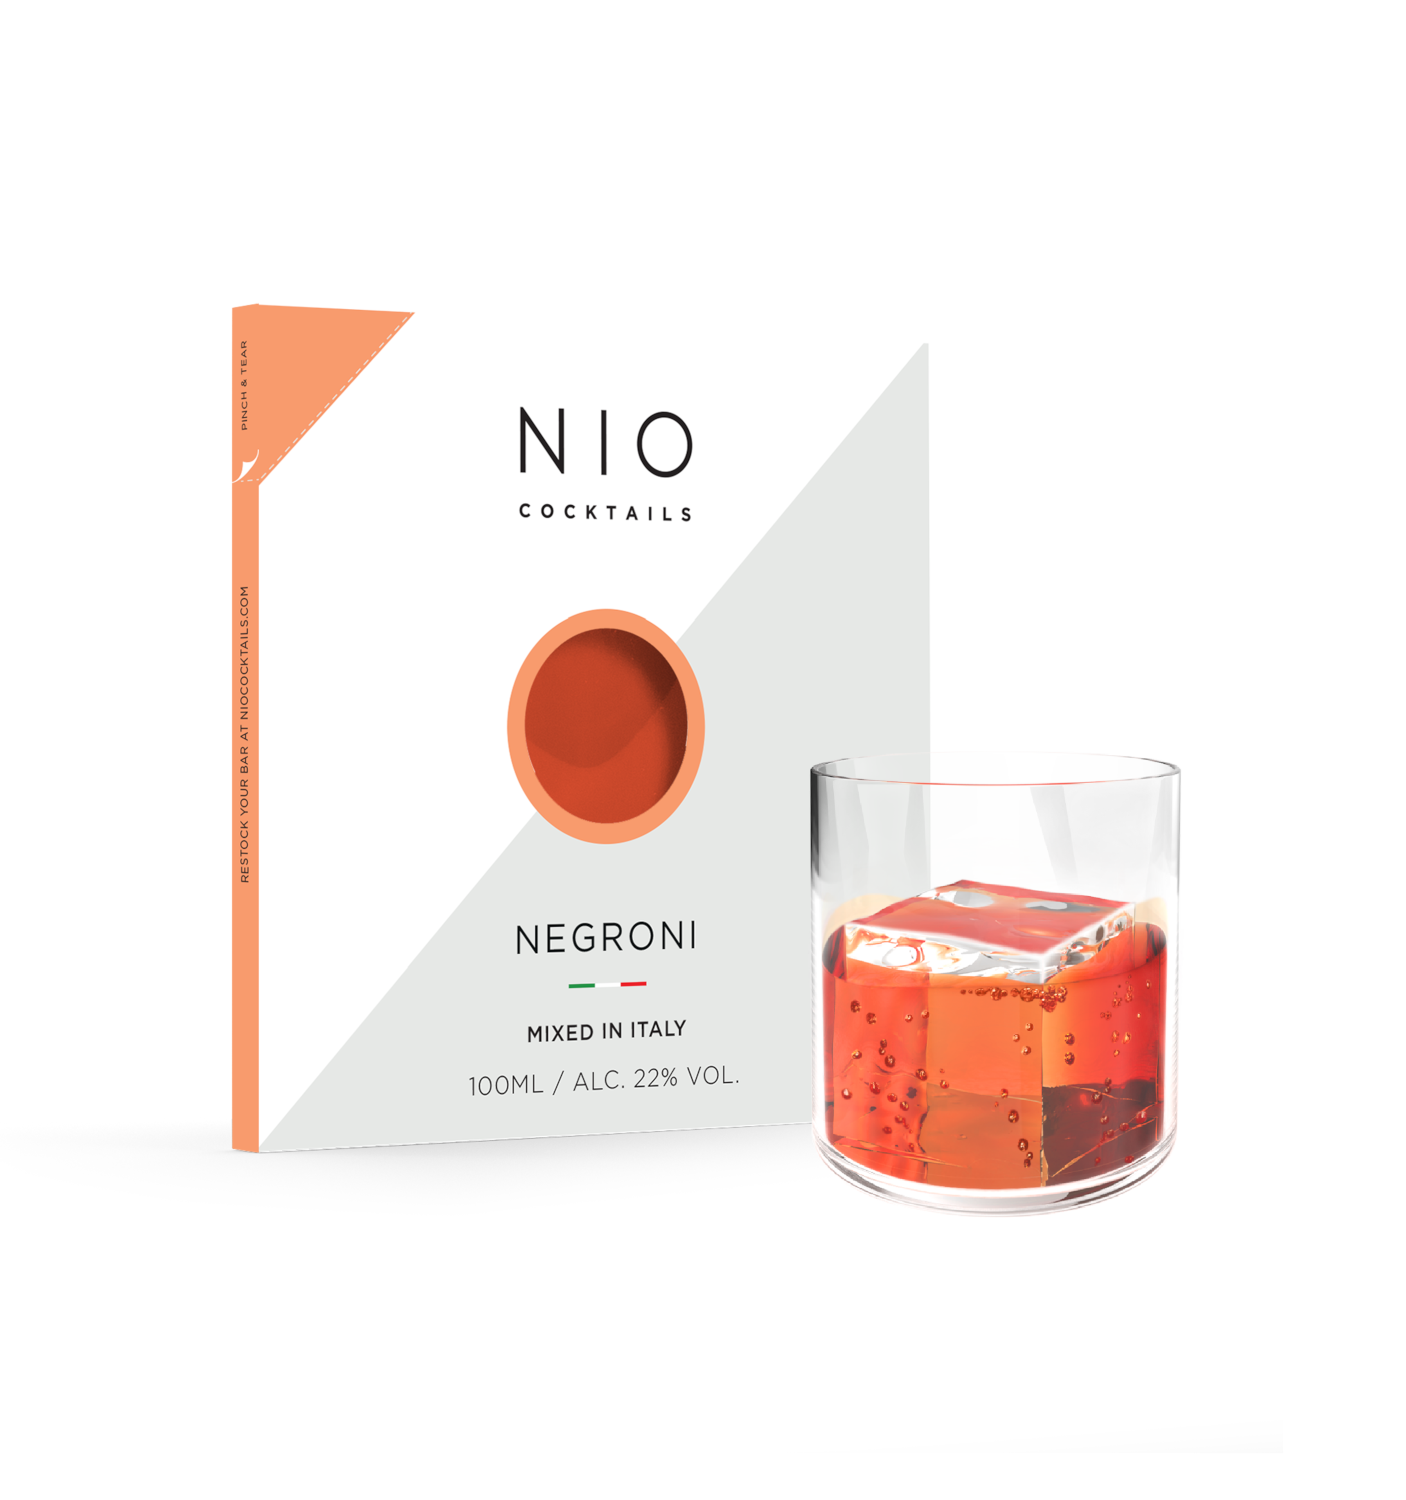 NIO Cocktails - Negroni